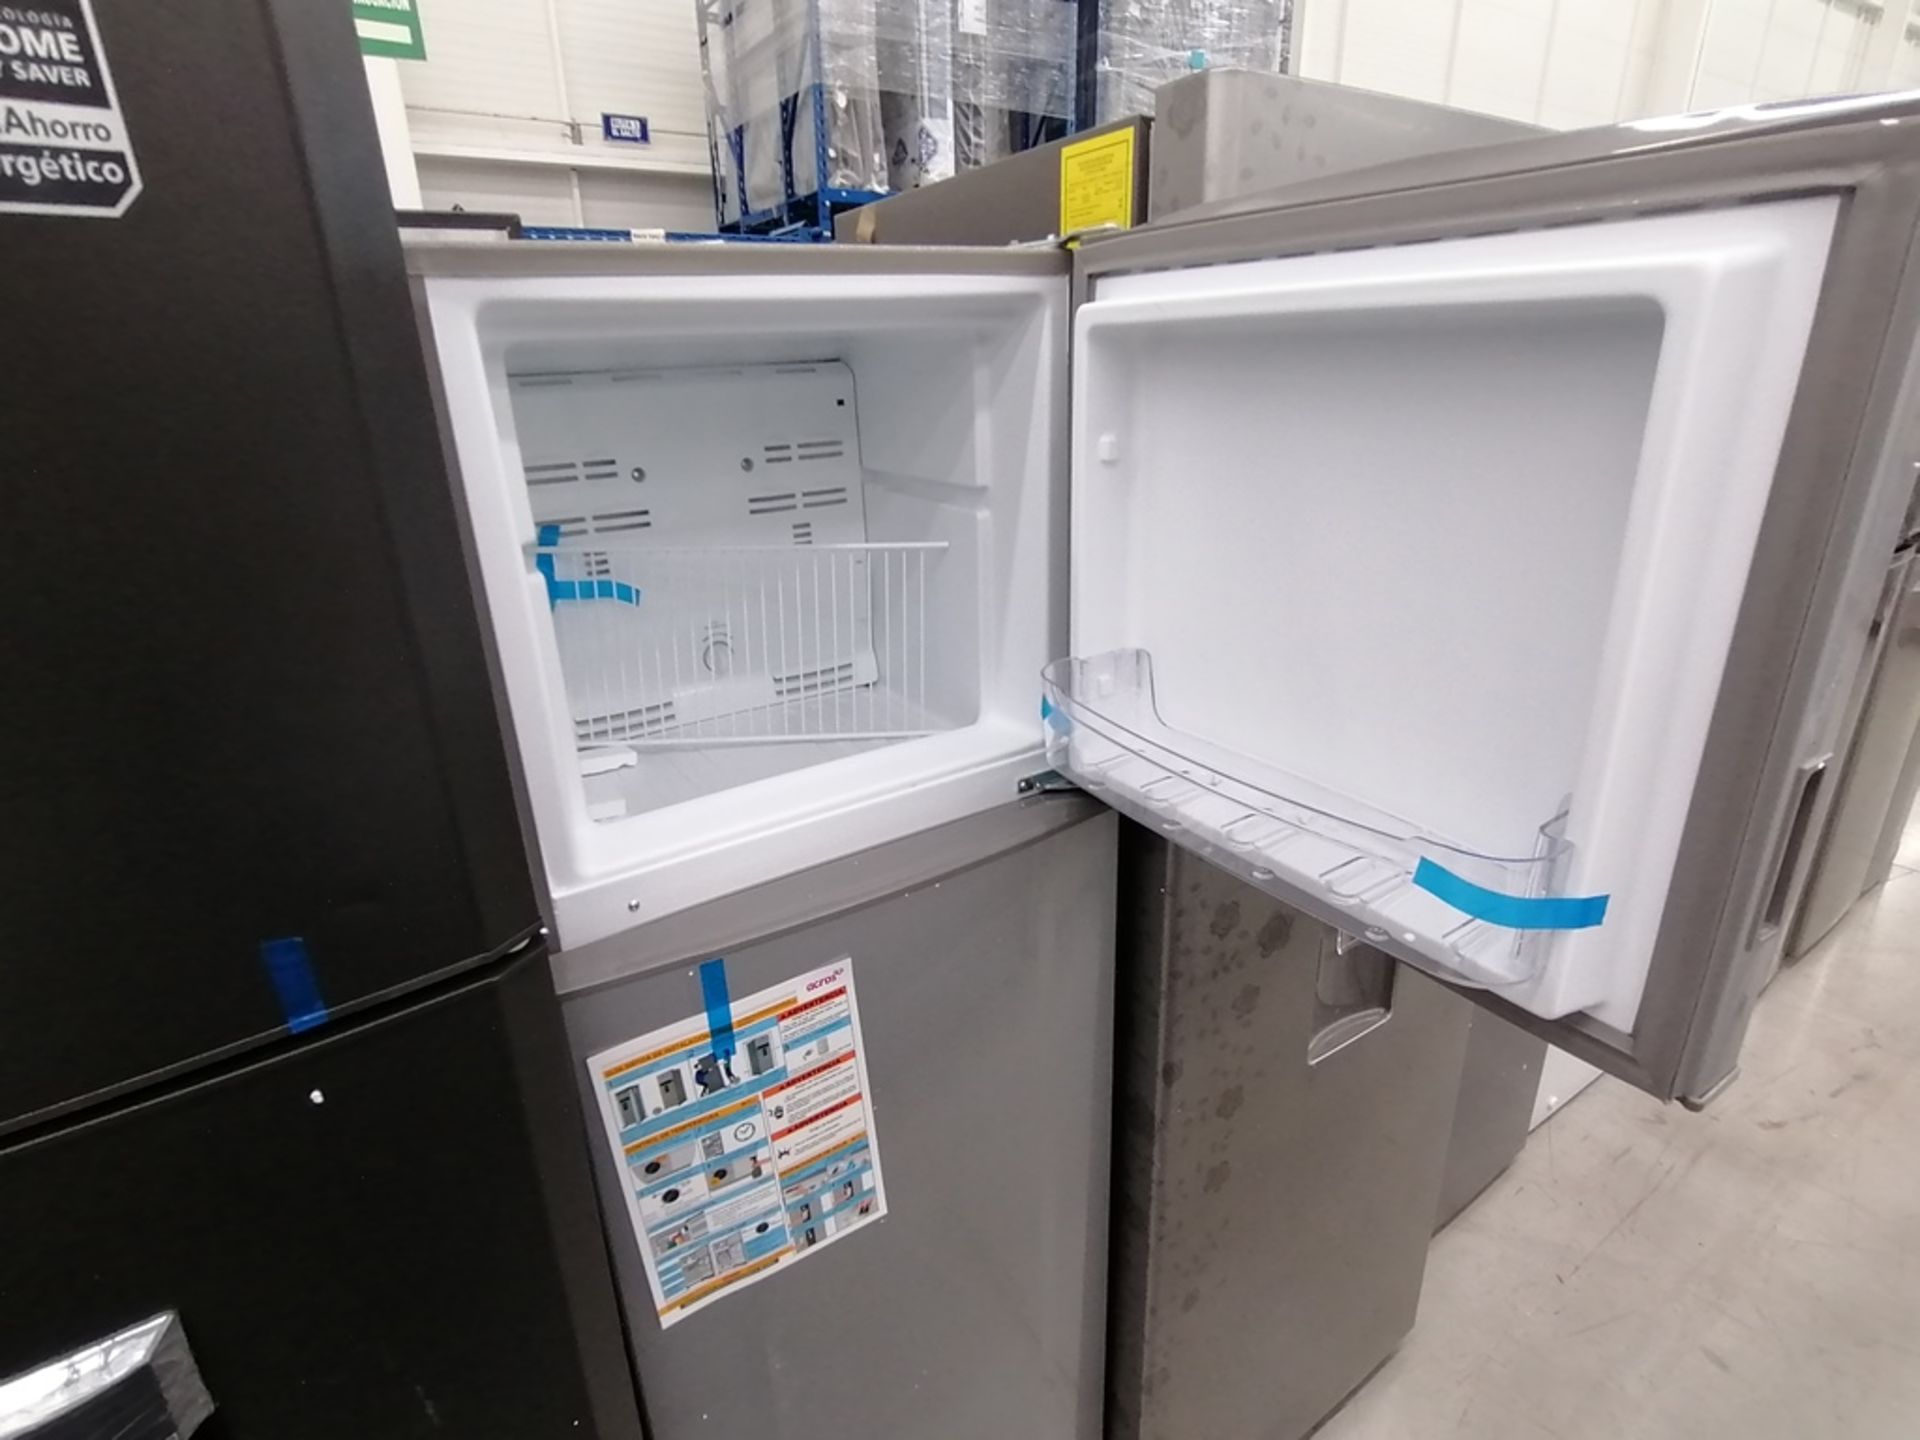 Lote de 2 refrigeradores incluye: 1 Refrigerador con dispensador de agua, Marca Mabe, Modelo RMA300 - Image 13 of 15